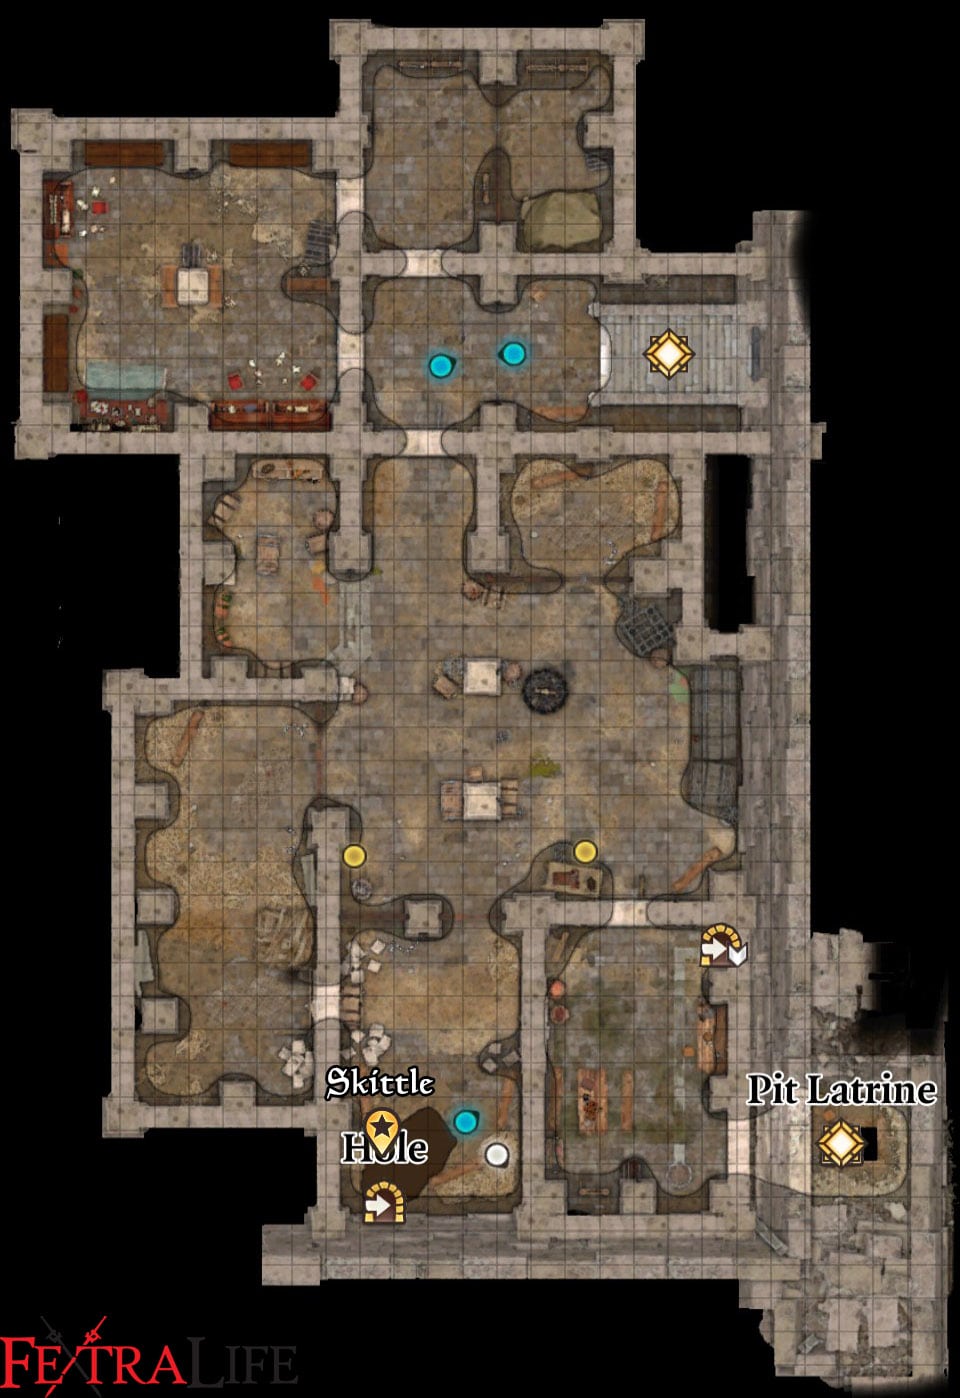 How To Escape Prison In Baldur's Gate 3